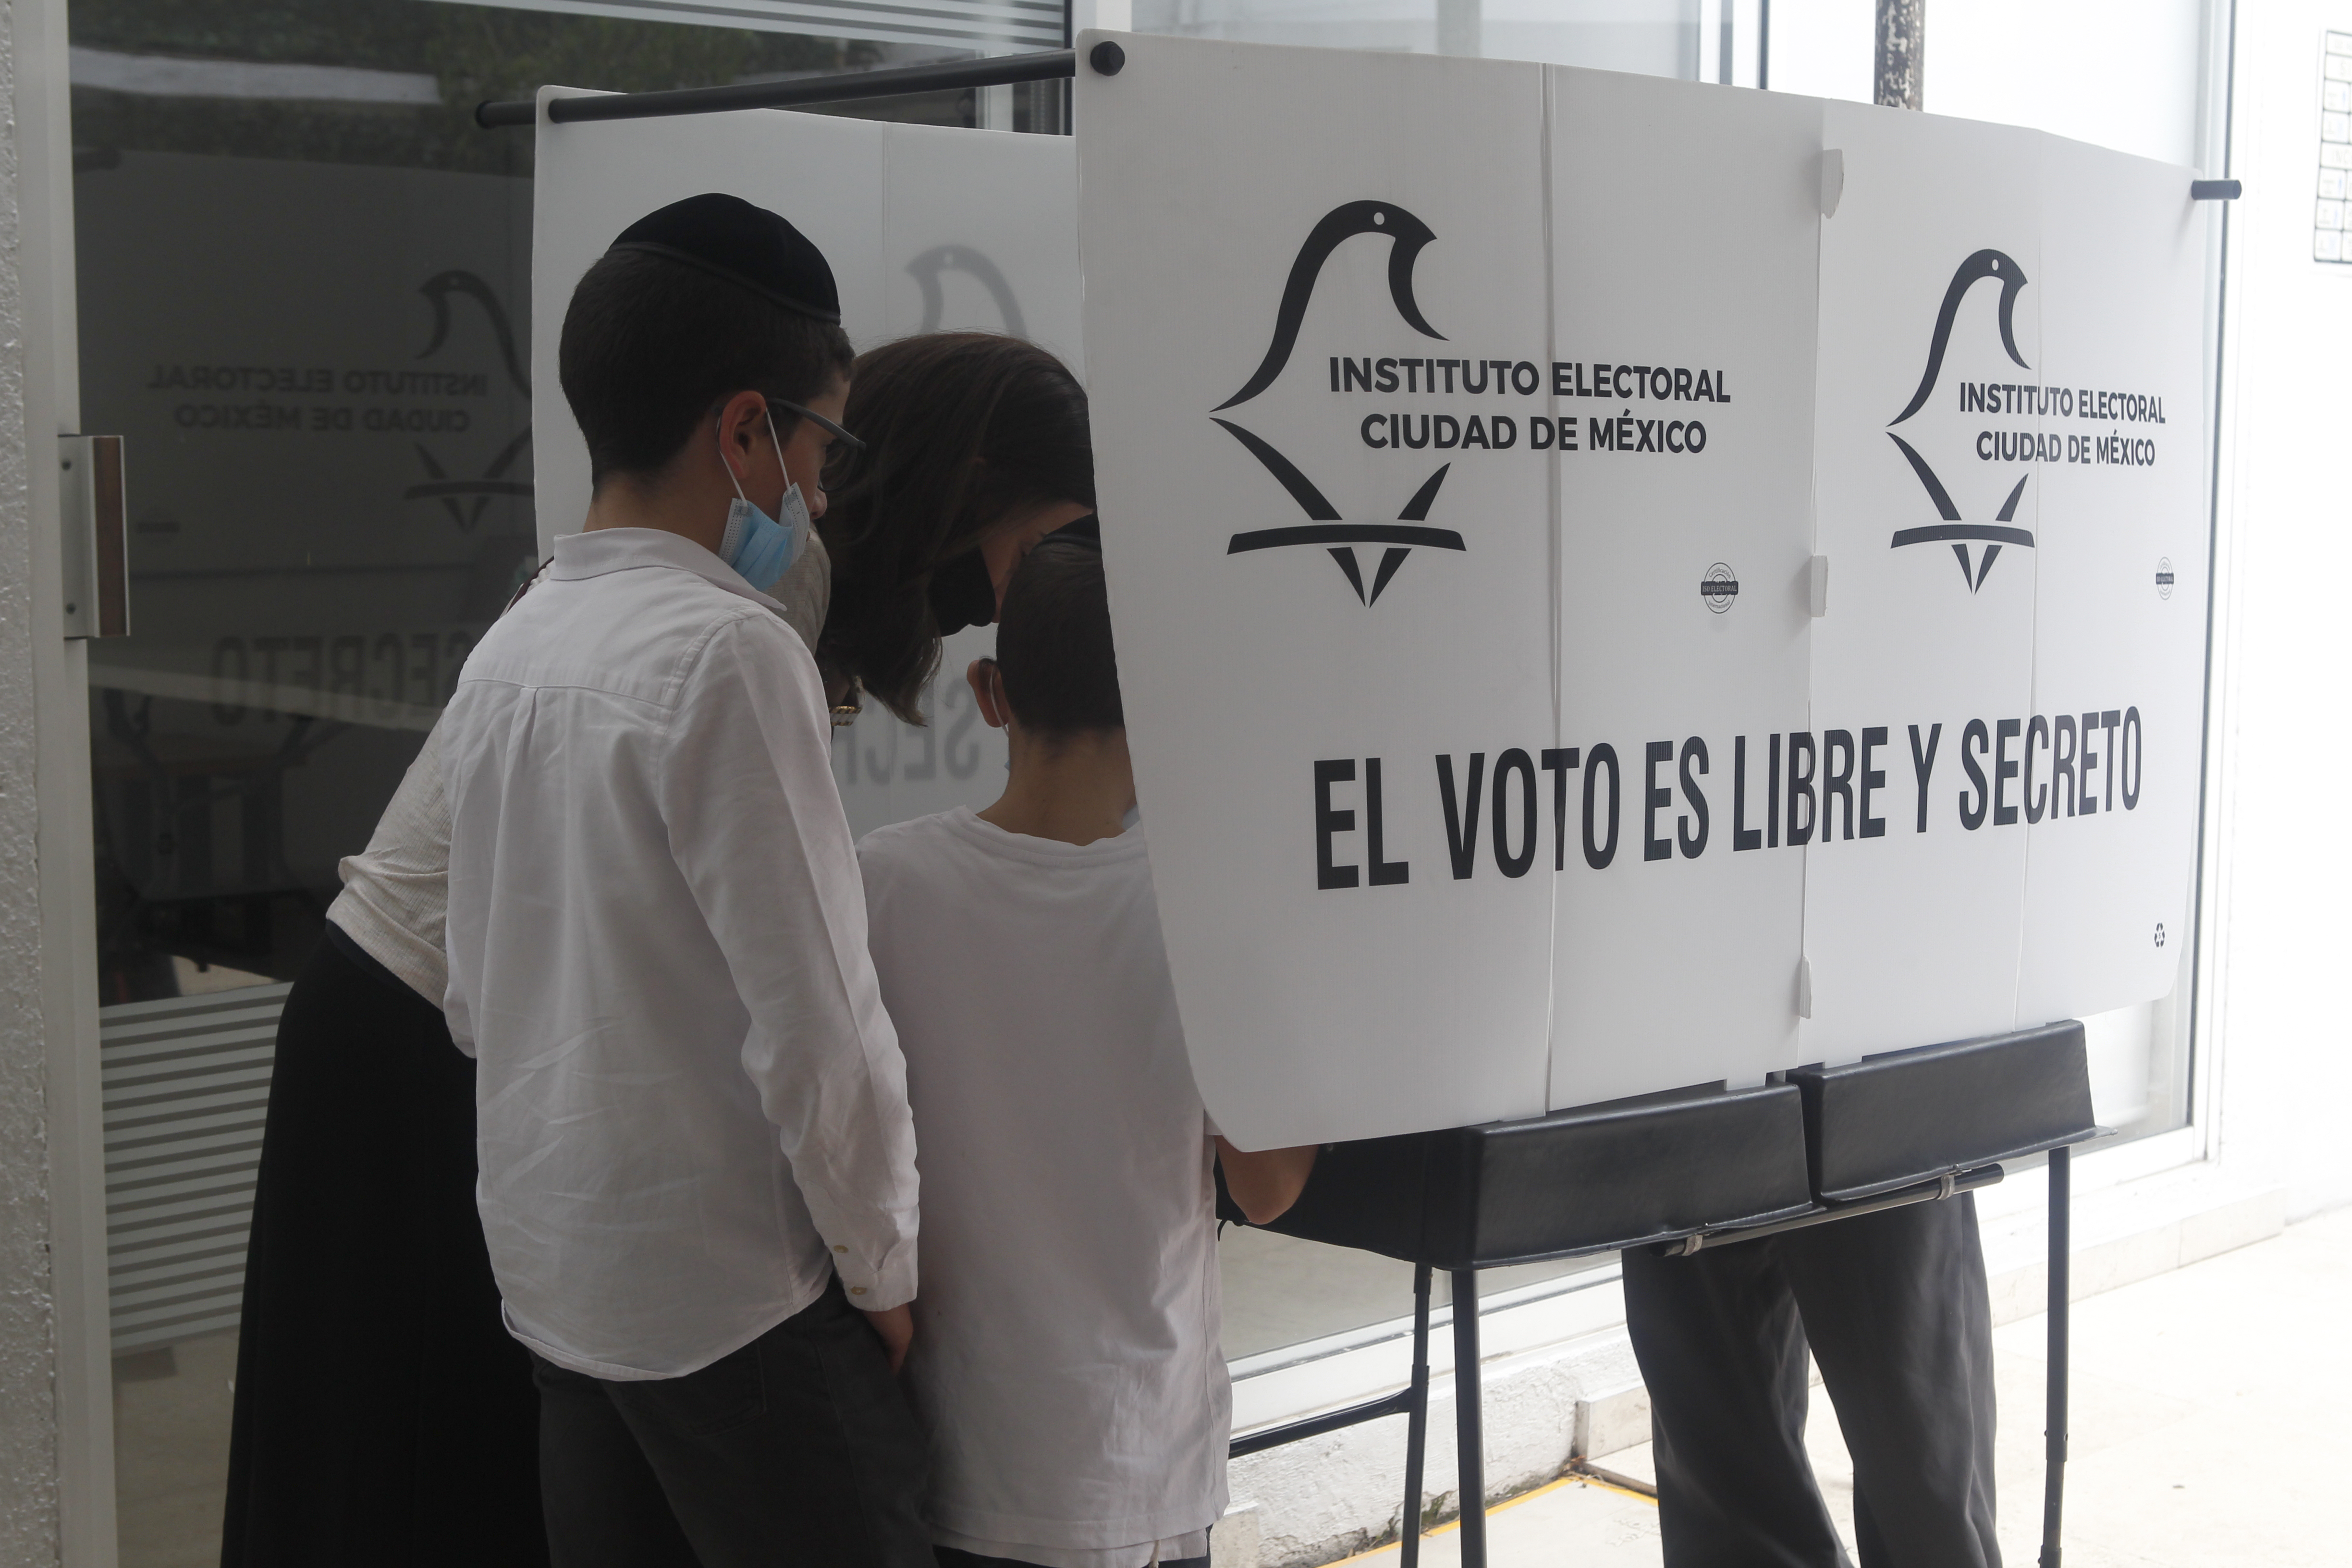 Cada año el INE apoya a los organismos locales en la organización de elecciones locales.
Foto Karina Hernández / Infobae